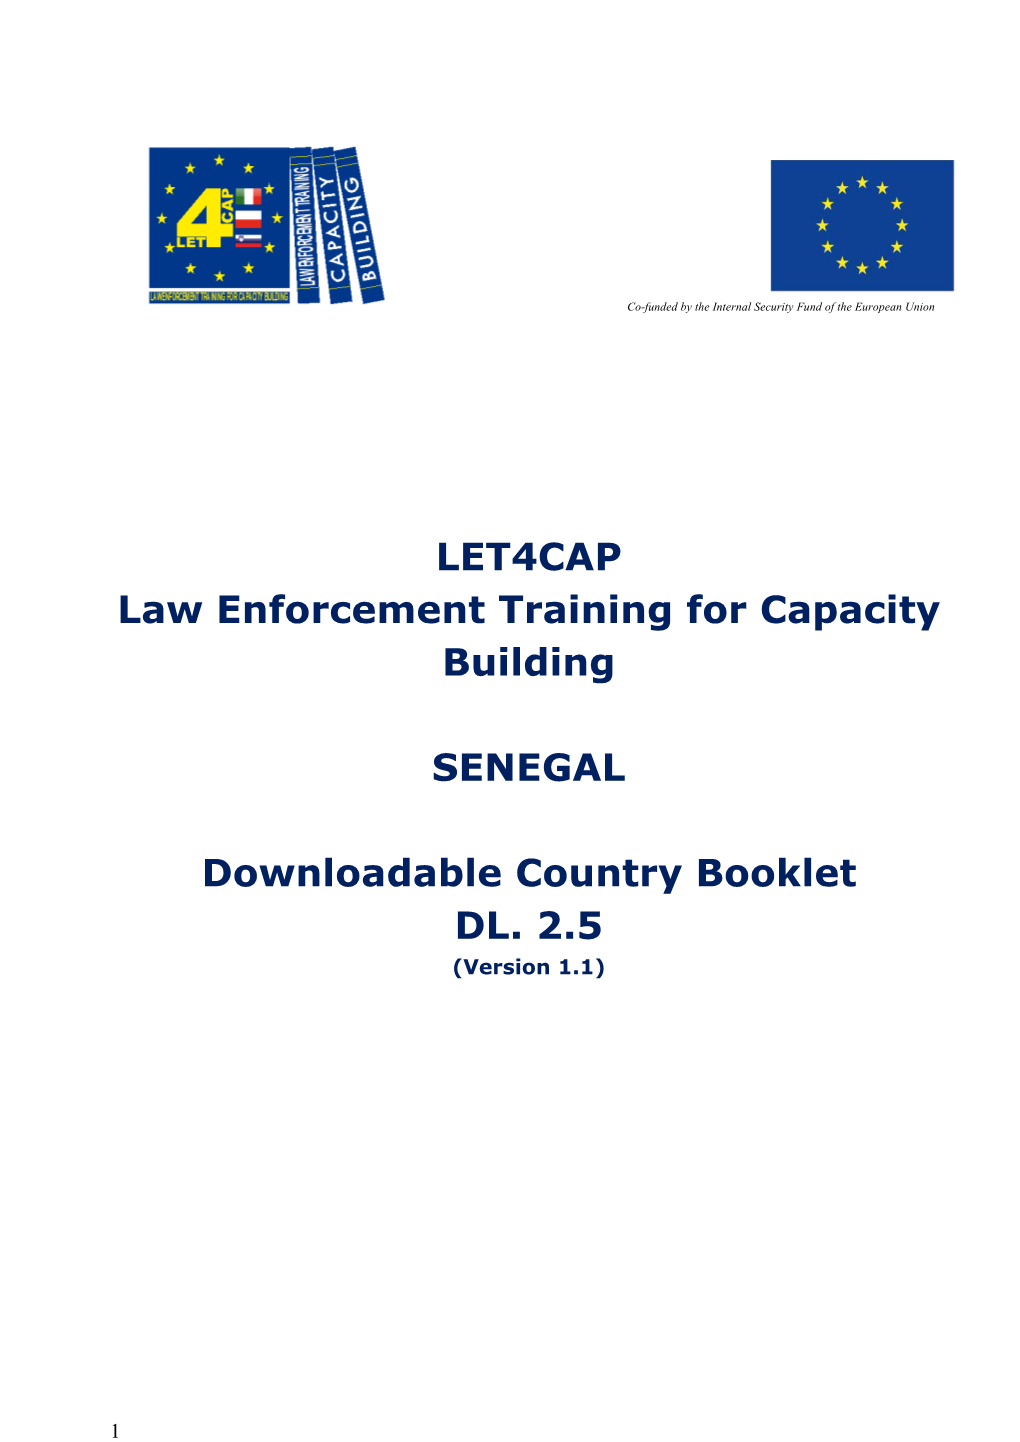 LET4CAP Law Enforcement Training for Capacity Building SENEGAL